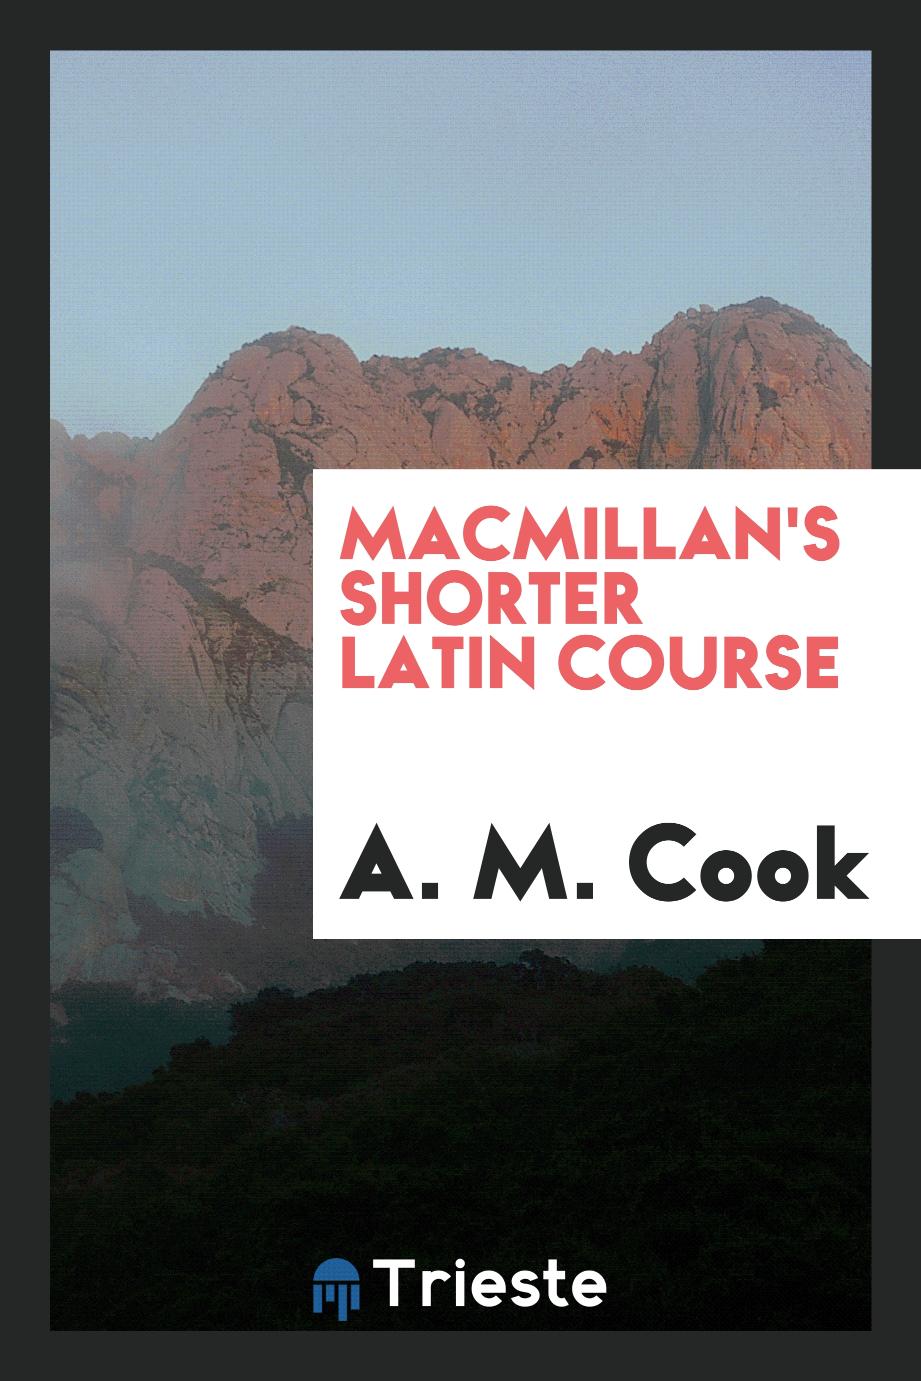 Macmillan's shorter Latin course